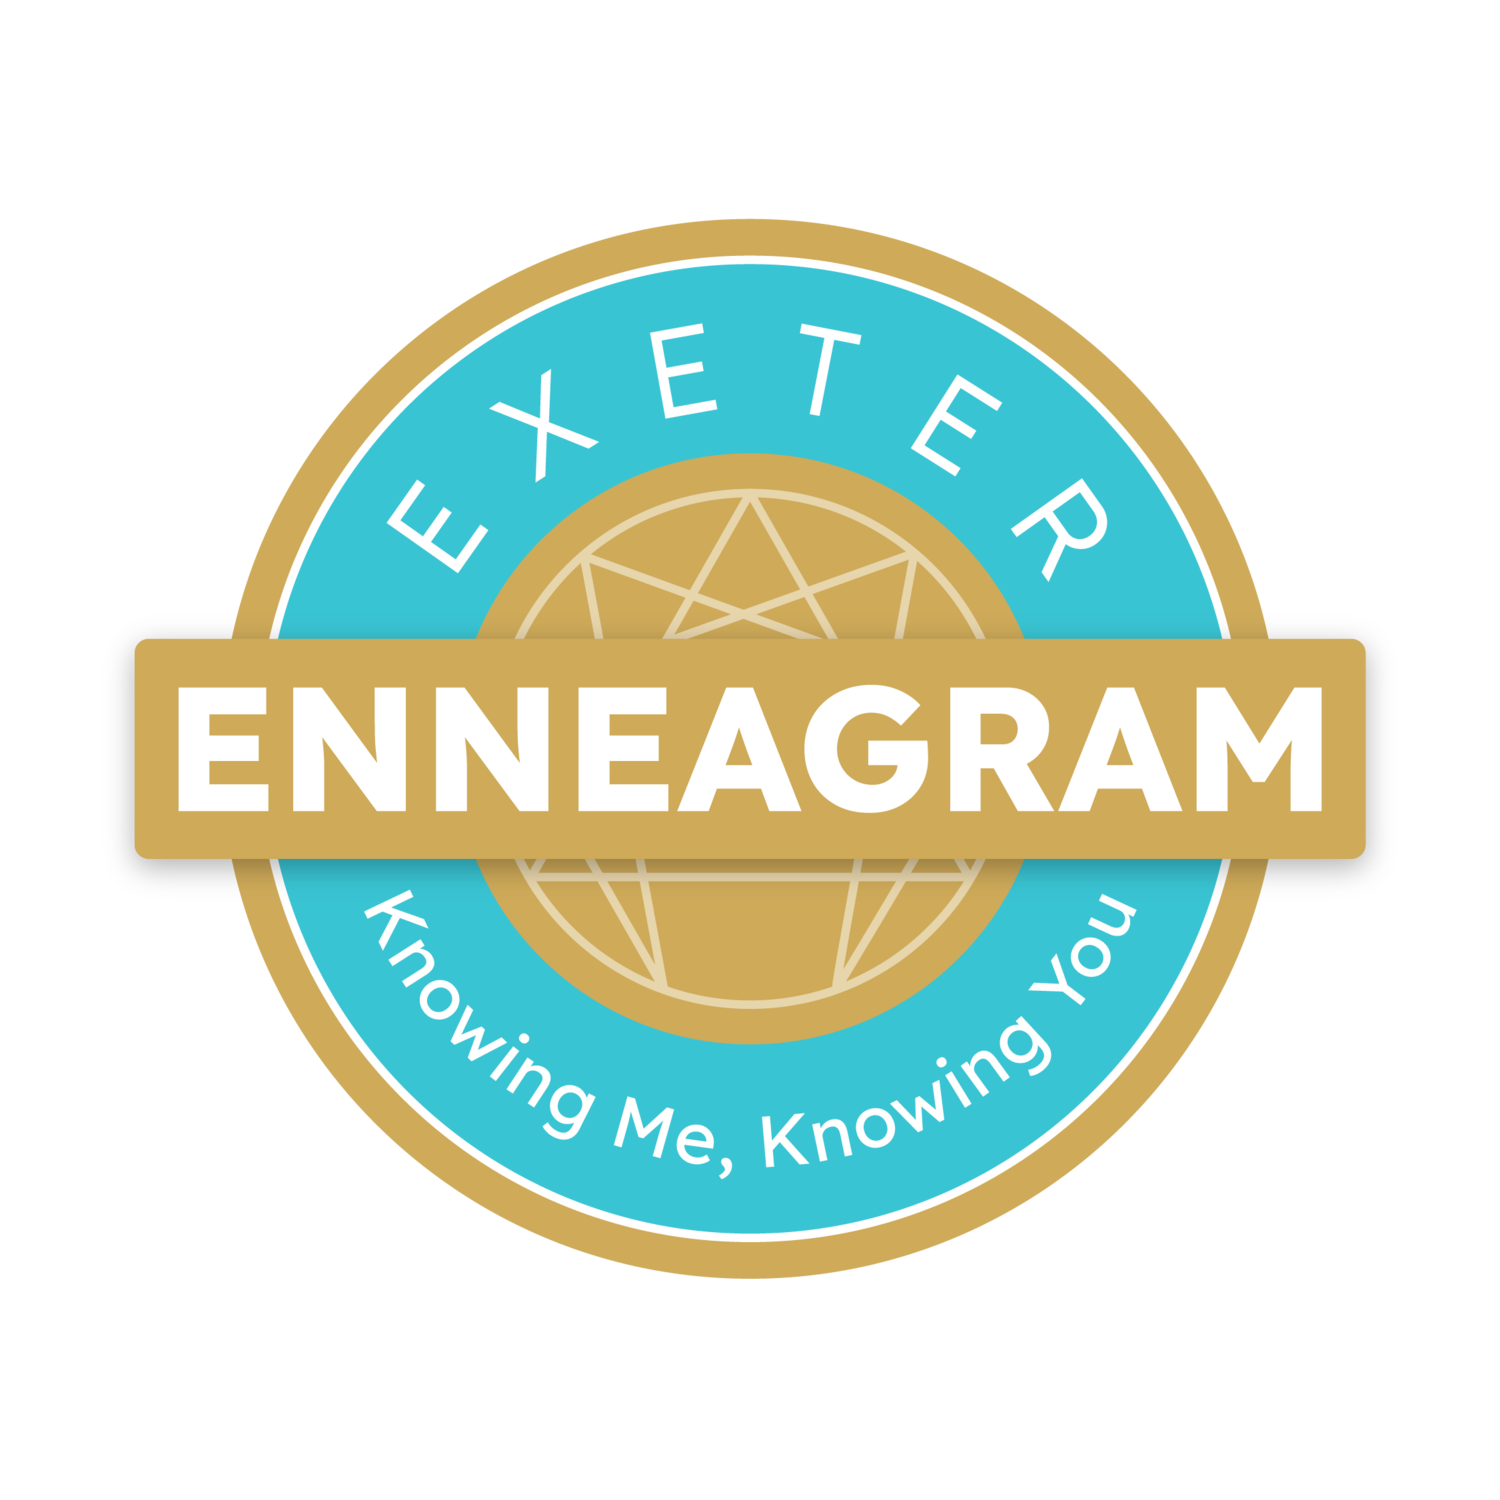 Exeter Enneagram